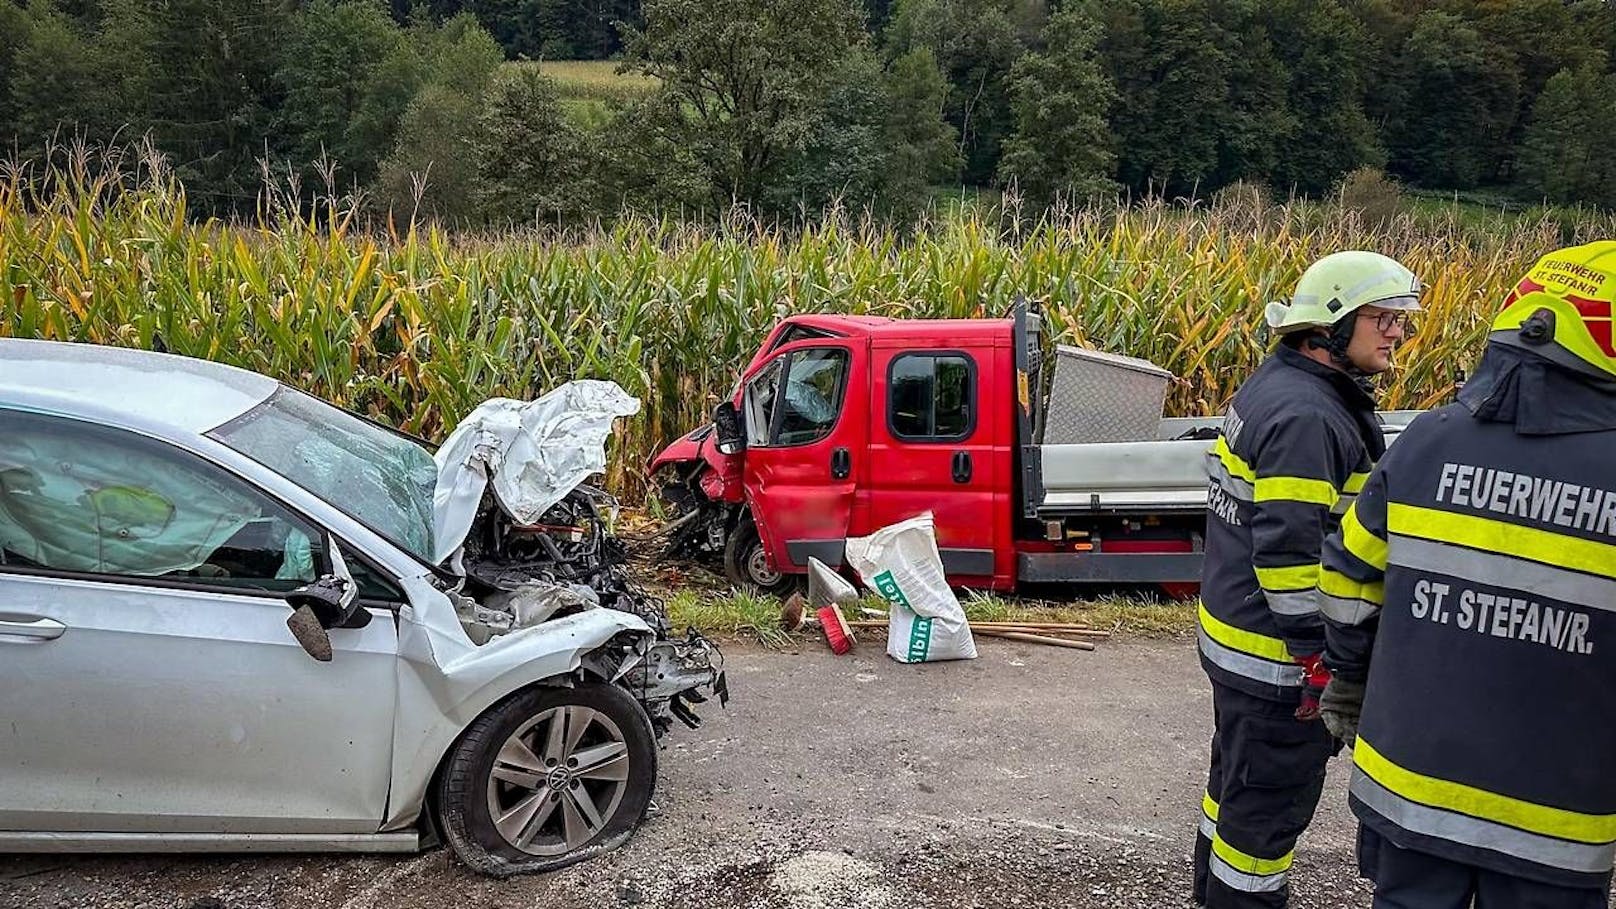 Eine 27-jährige Autofahrerin ist am Montag bei einem  Frontalzusammenstoß in der Südoststeiermark lebensgefährlich verletzt worden. Die junge Frau dürfte beim Überholen den Gegenverkehr übersehen haben.